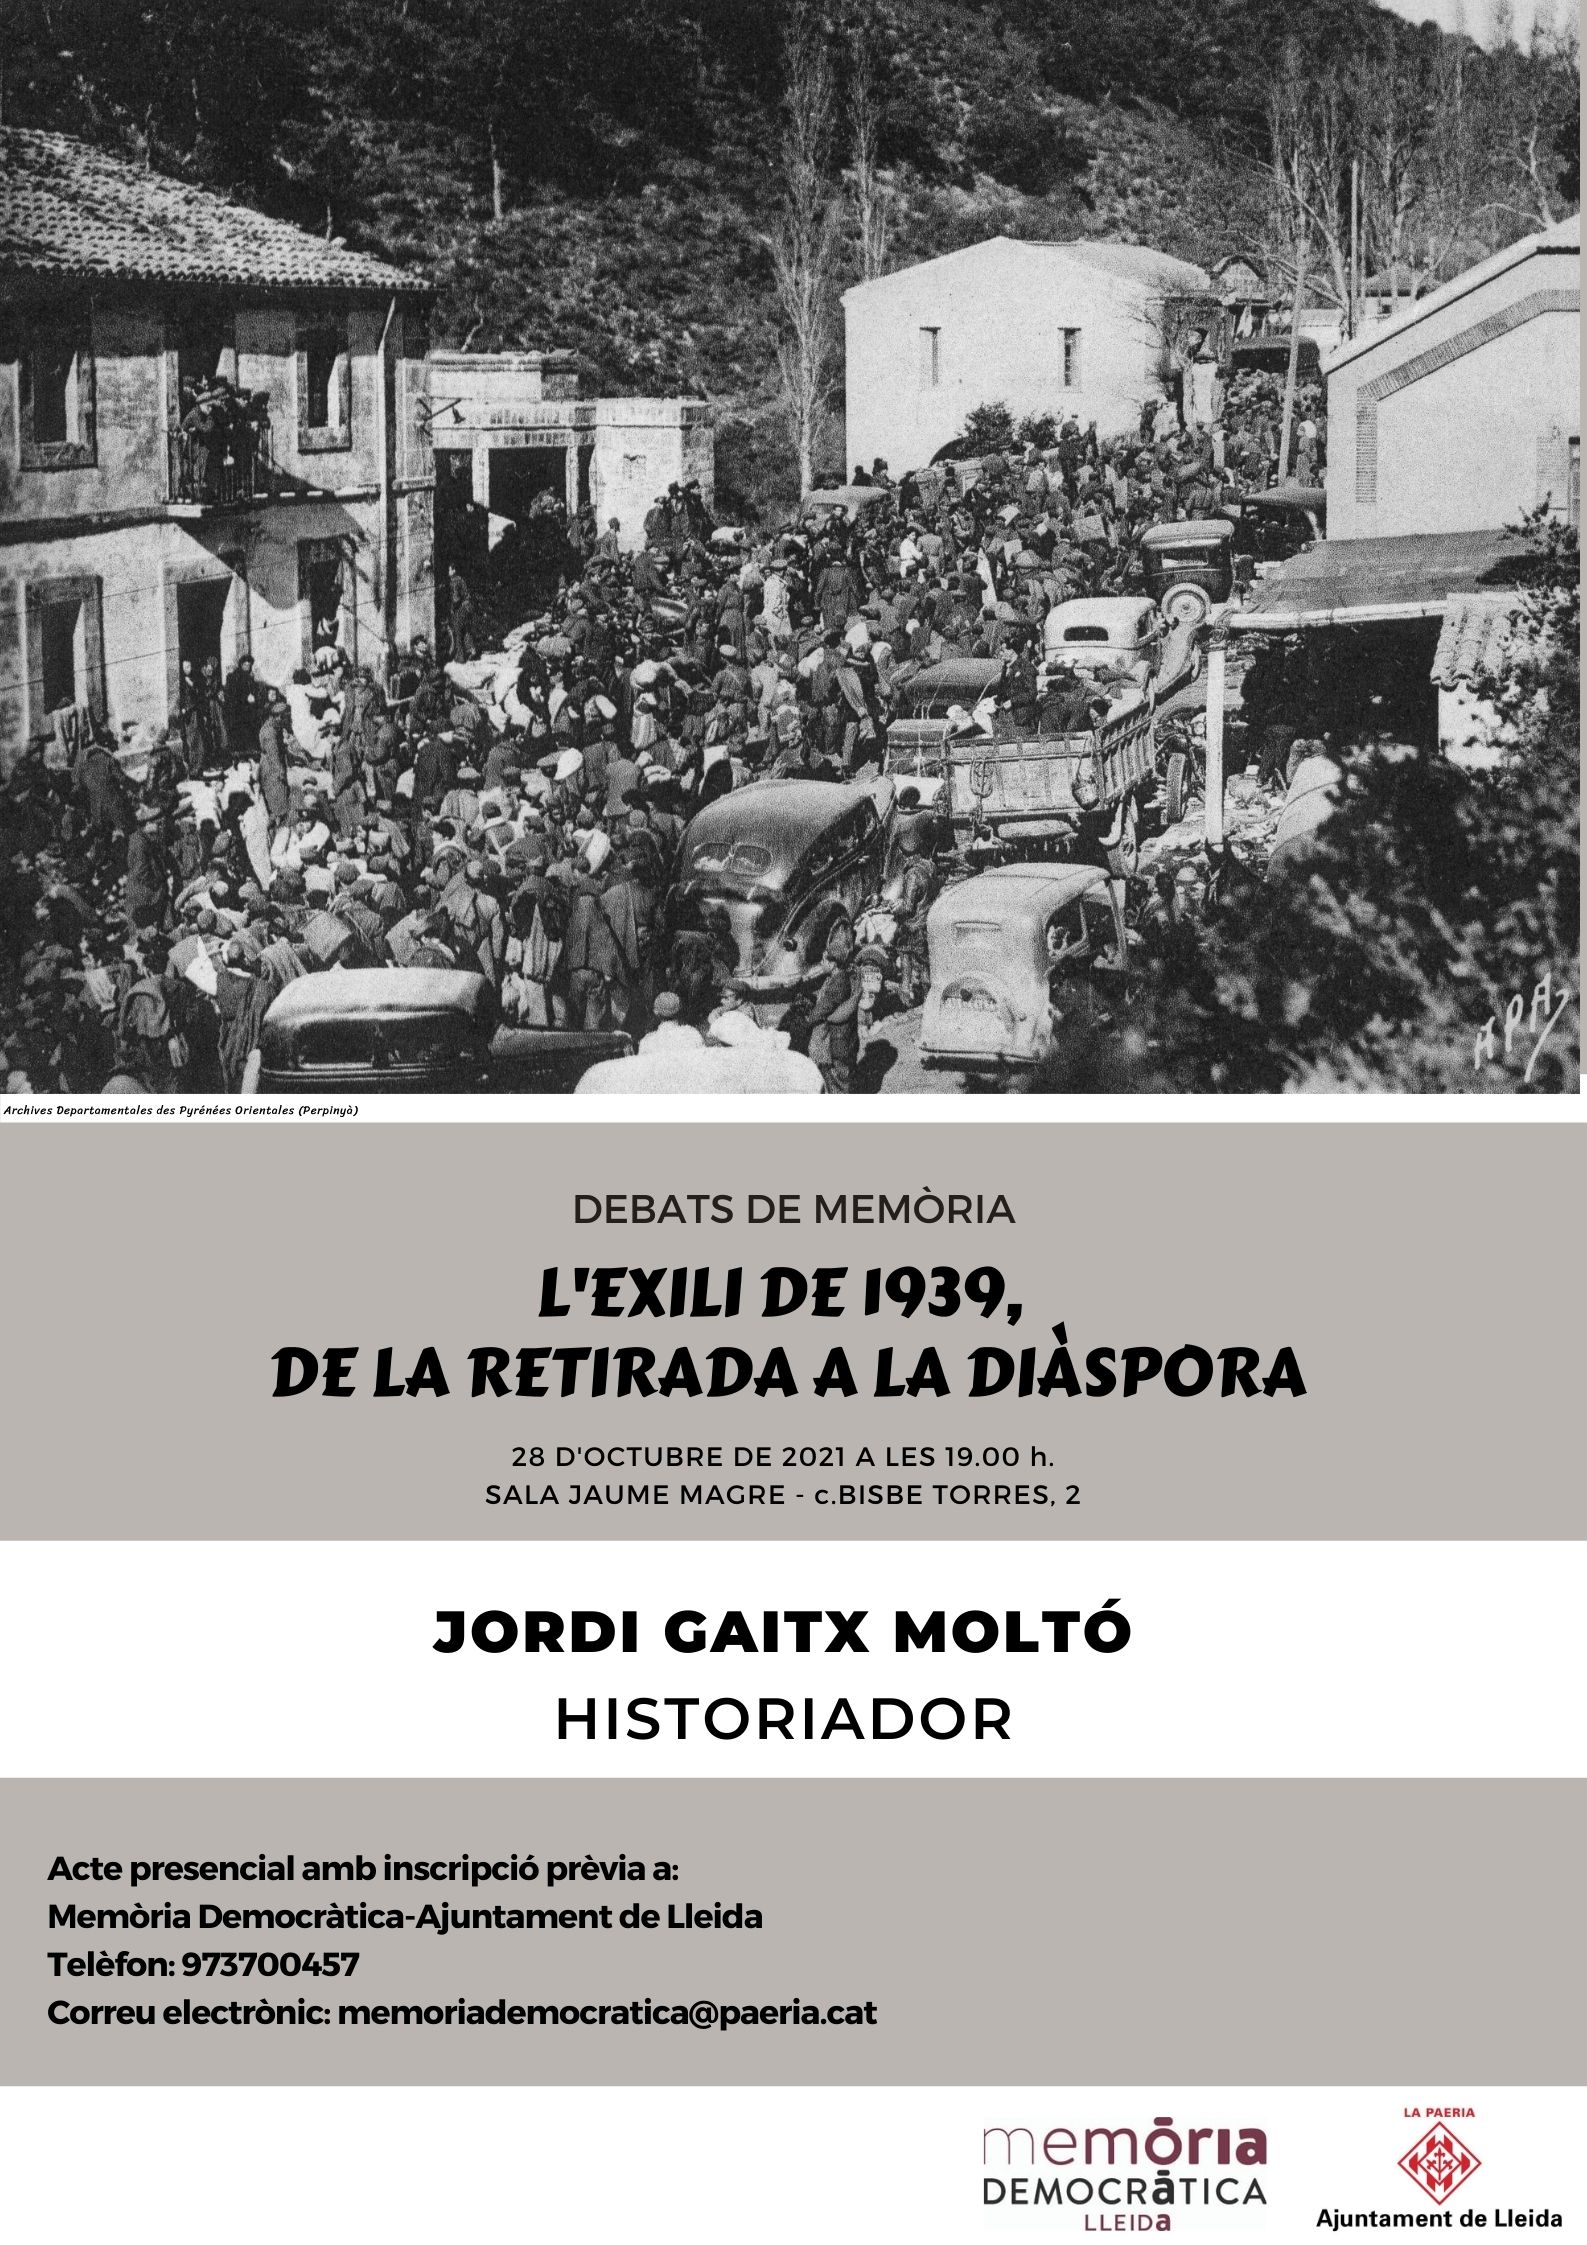 La Paeria ha organitzat una nova edició de Debats de Memòria, dins el programa d’activitats a l’entorn de l’Exili. Dijous es farà la conferència "L’exili de 1939: de la Retirada a la diàspora", a càrrec de l’historiador Jordi Gaitx